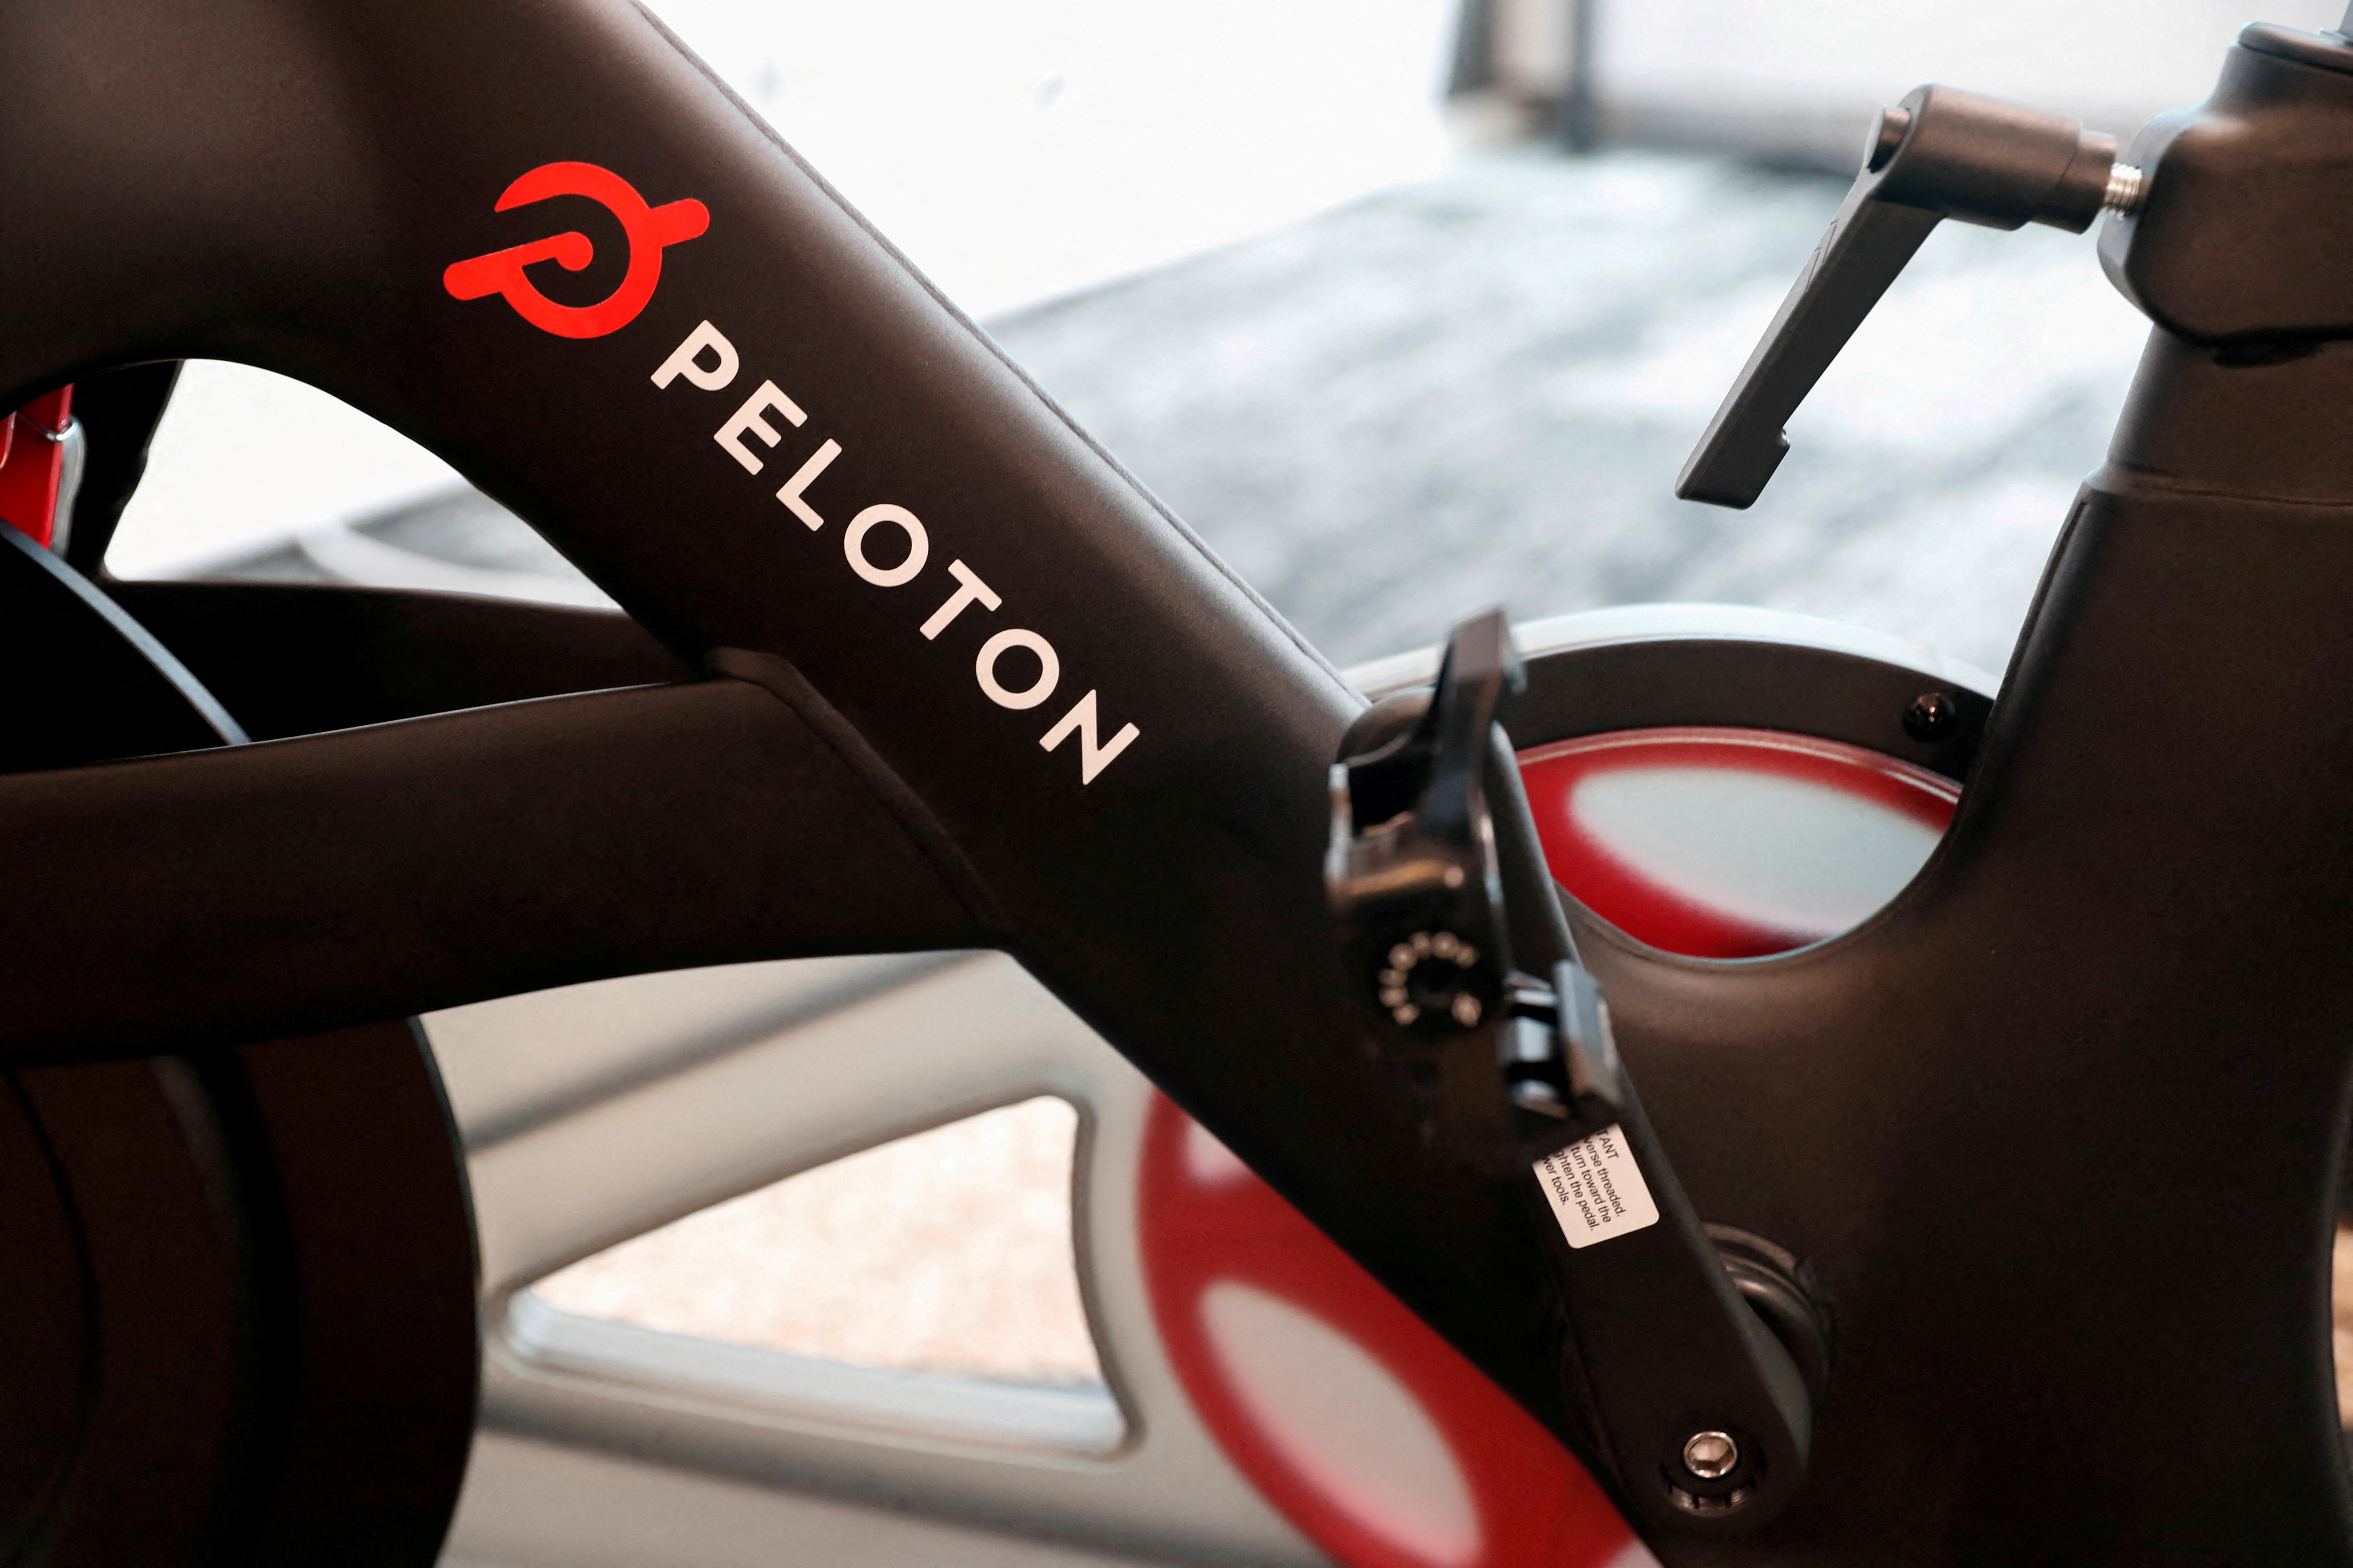 یک دوچرخه ورزشی Peloton پس از به صدا درآمدن زنگ افتتاح IPO شرکت در سایت بازار نزدک در شهر نیویورک، نیویورک، ایالات متحده، 26 سپتامبر 2019. رویترز / شانون استپلتون